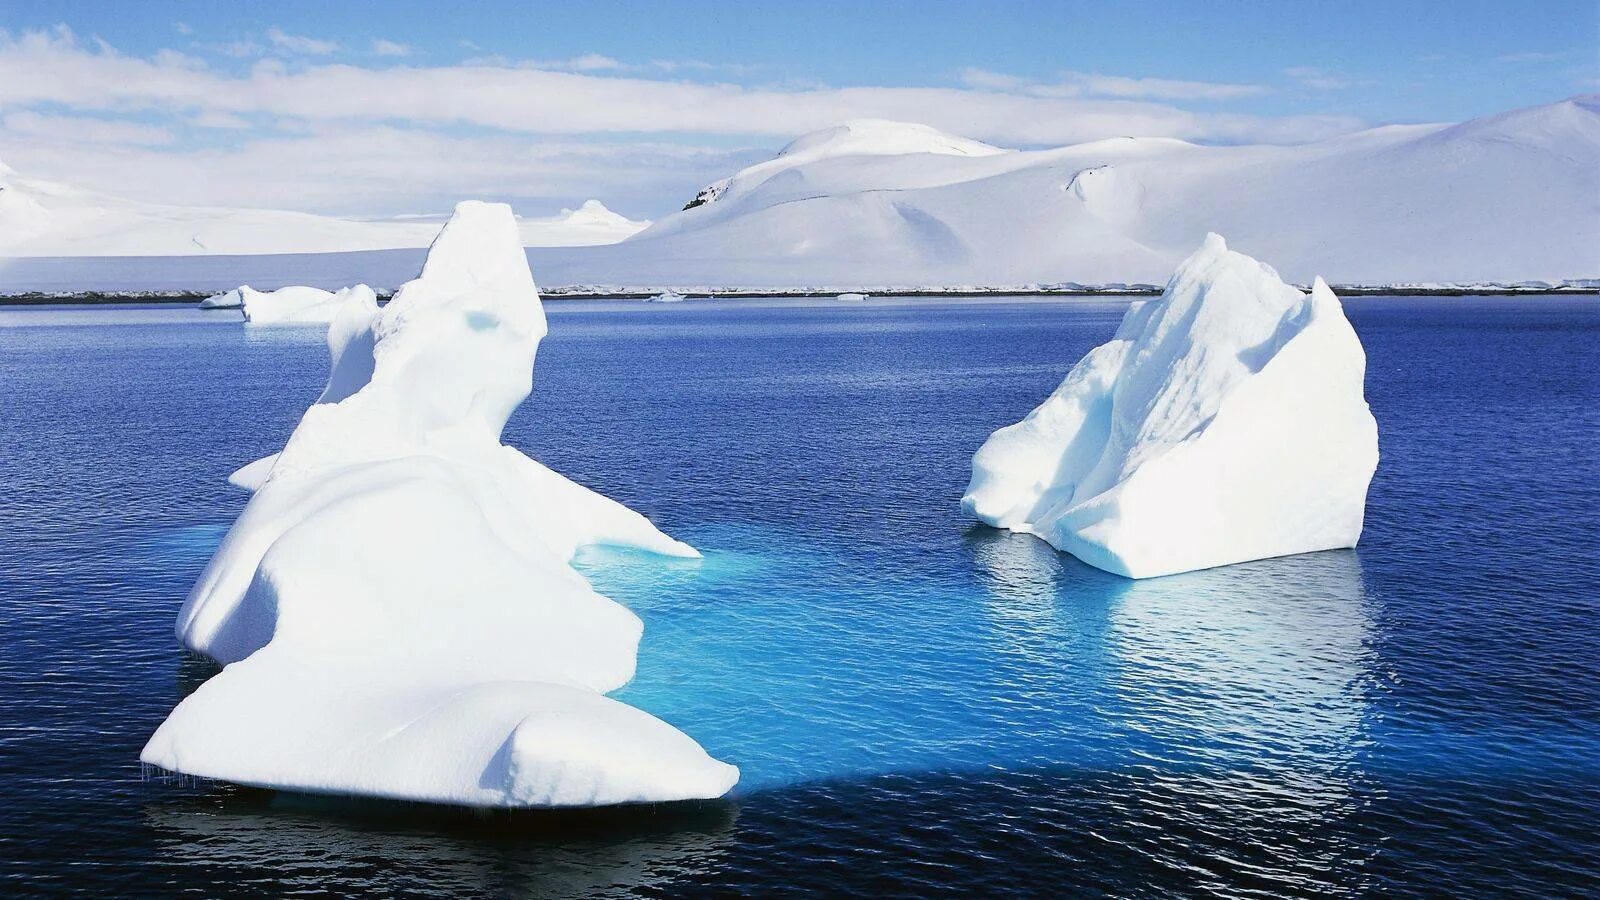 Море Уэдделла Южный океан. Море Уэдделла в Антарктиде. Южный Ледовитый океан. Море Уэдделла айсберги. Атлантический океан в антарктиде